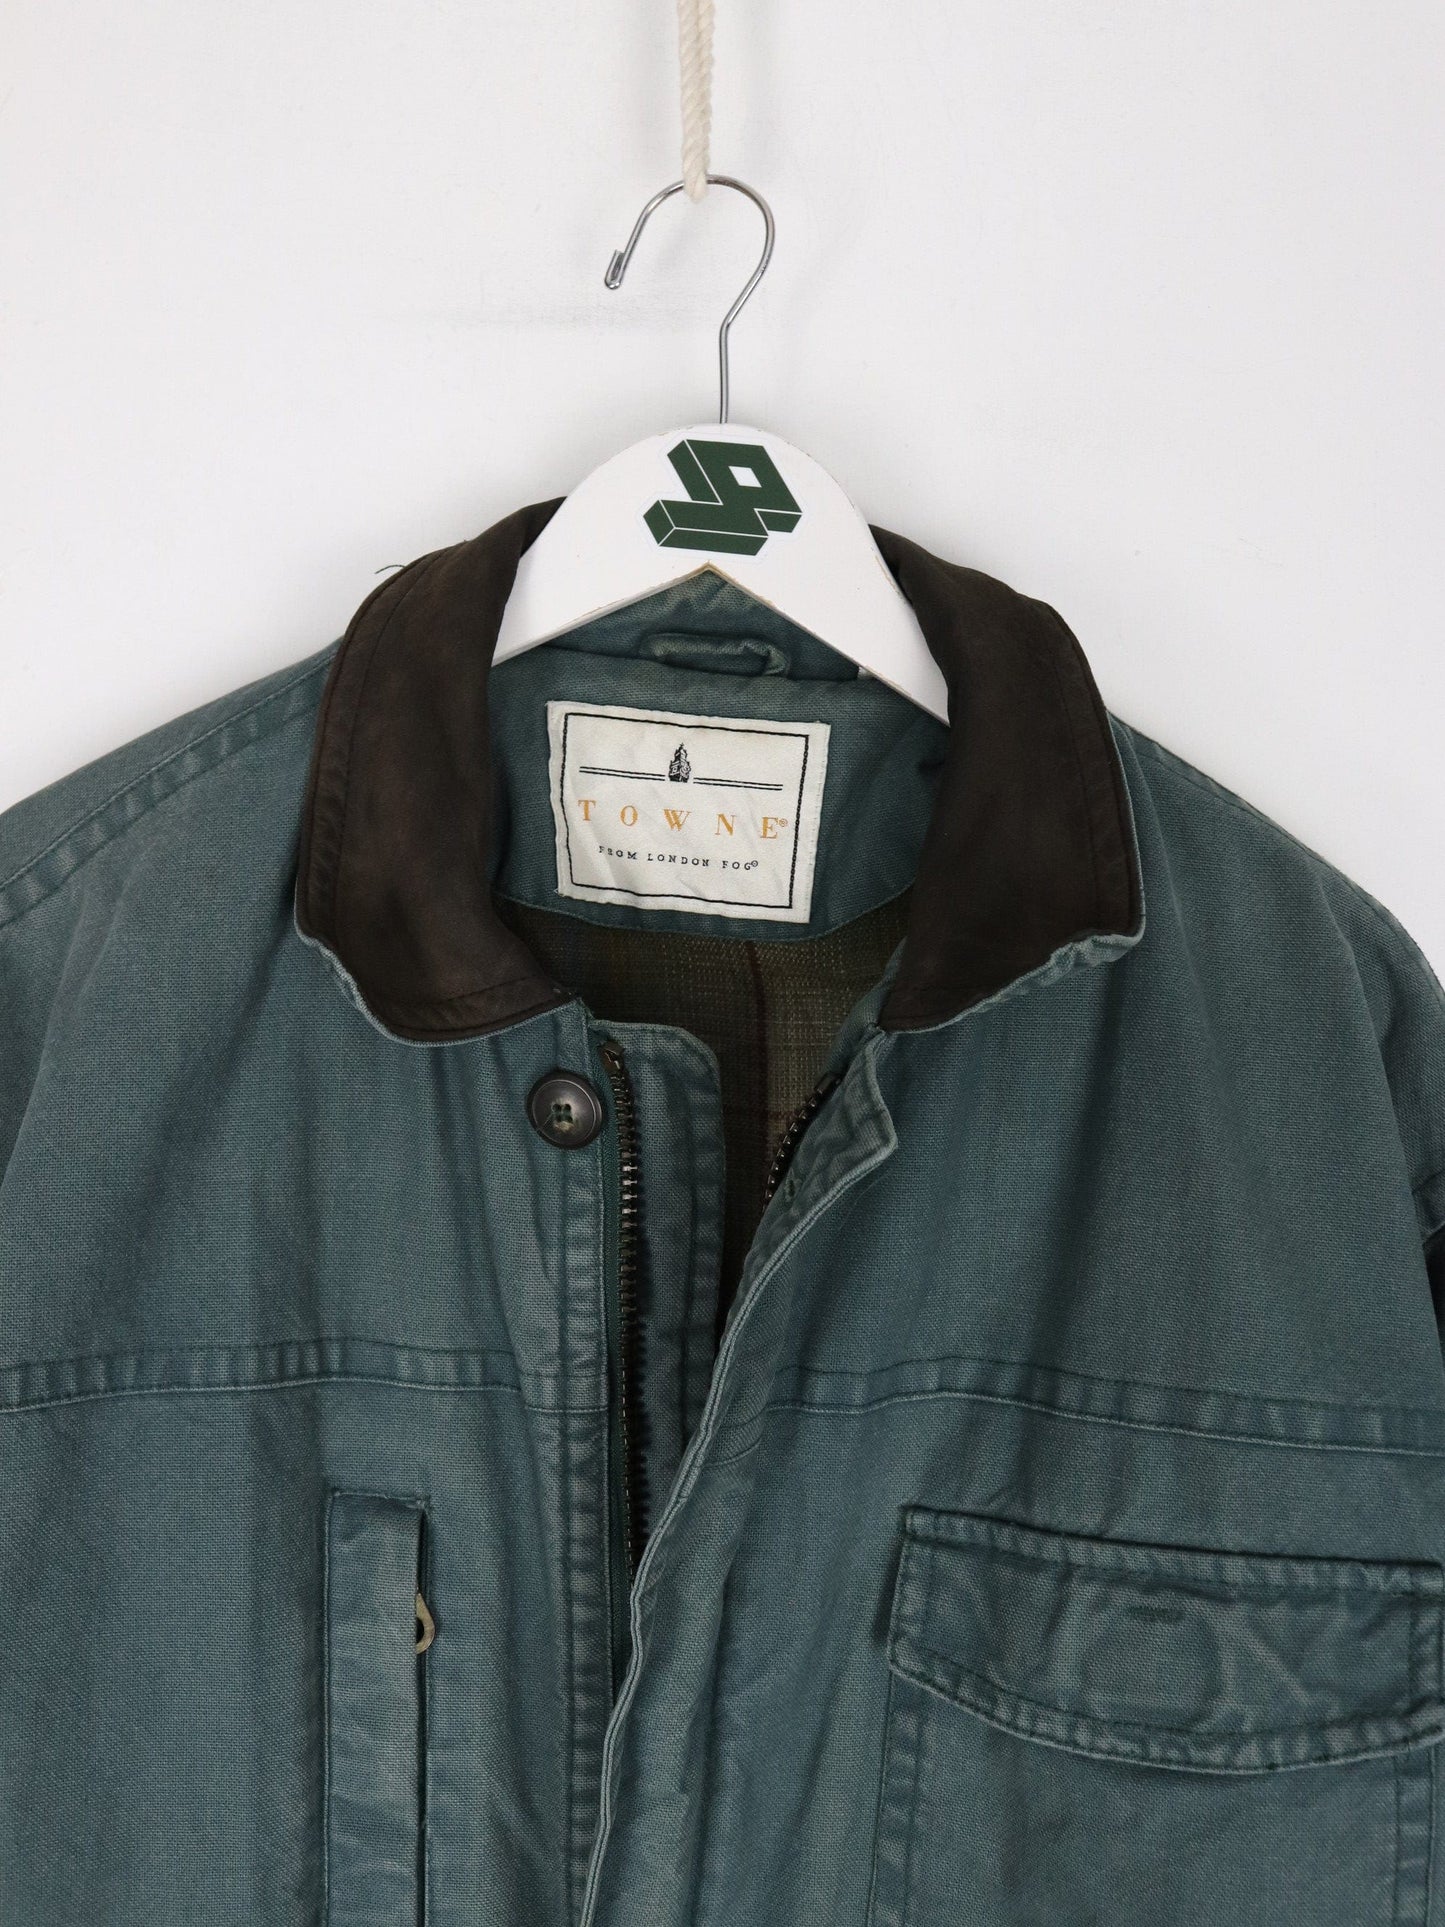 Other Jackets & Coats Vintage Towne London Fog Jacket Mens XL Green Chore Coat